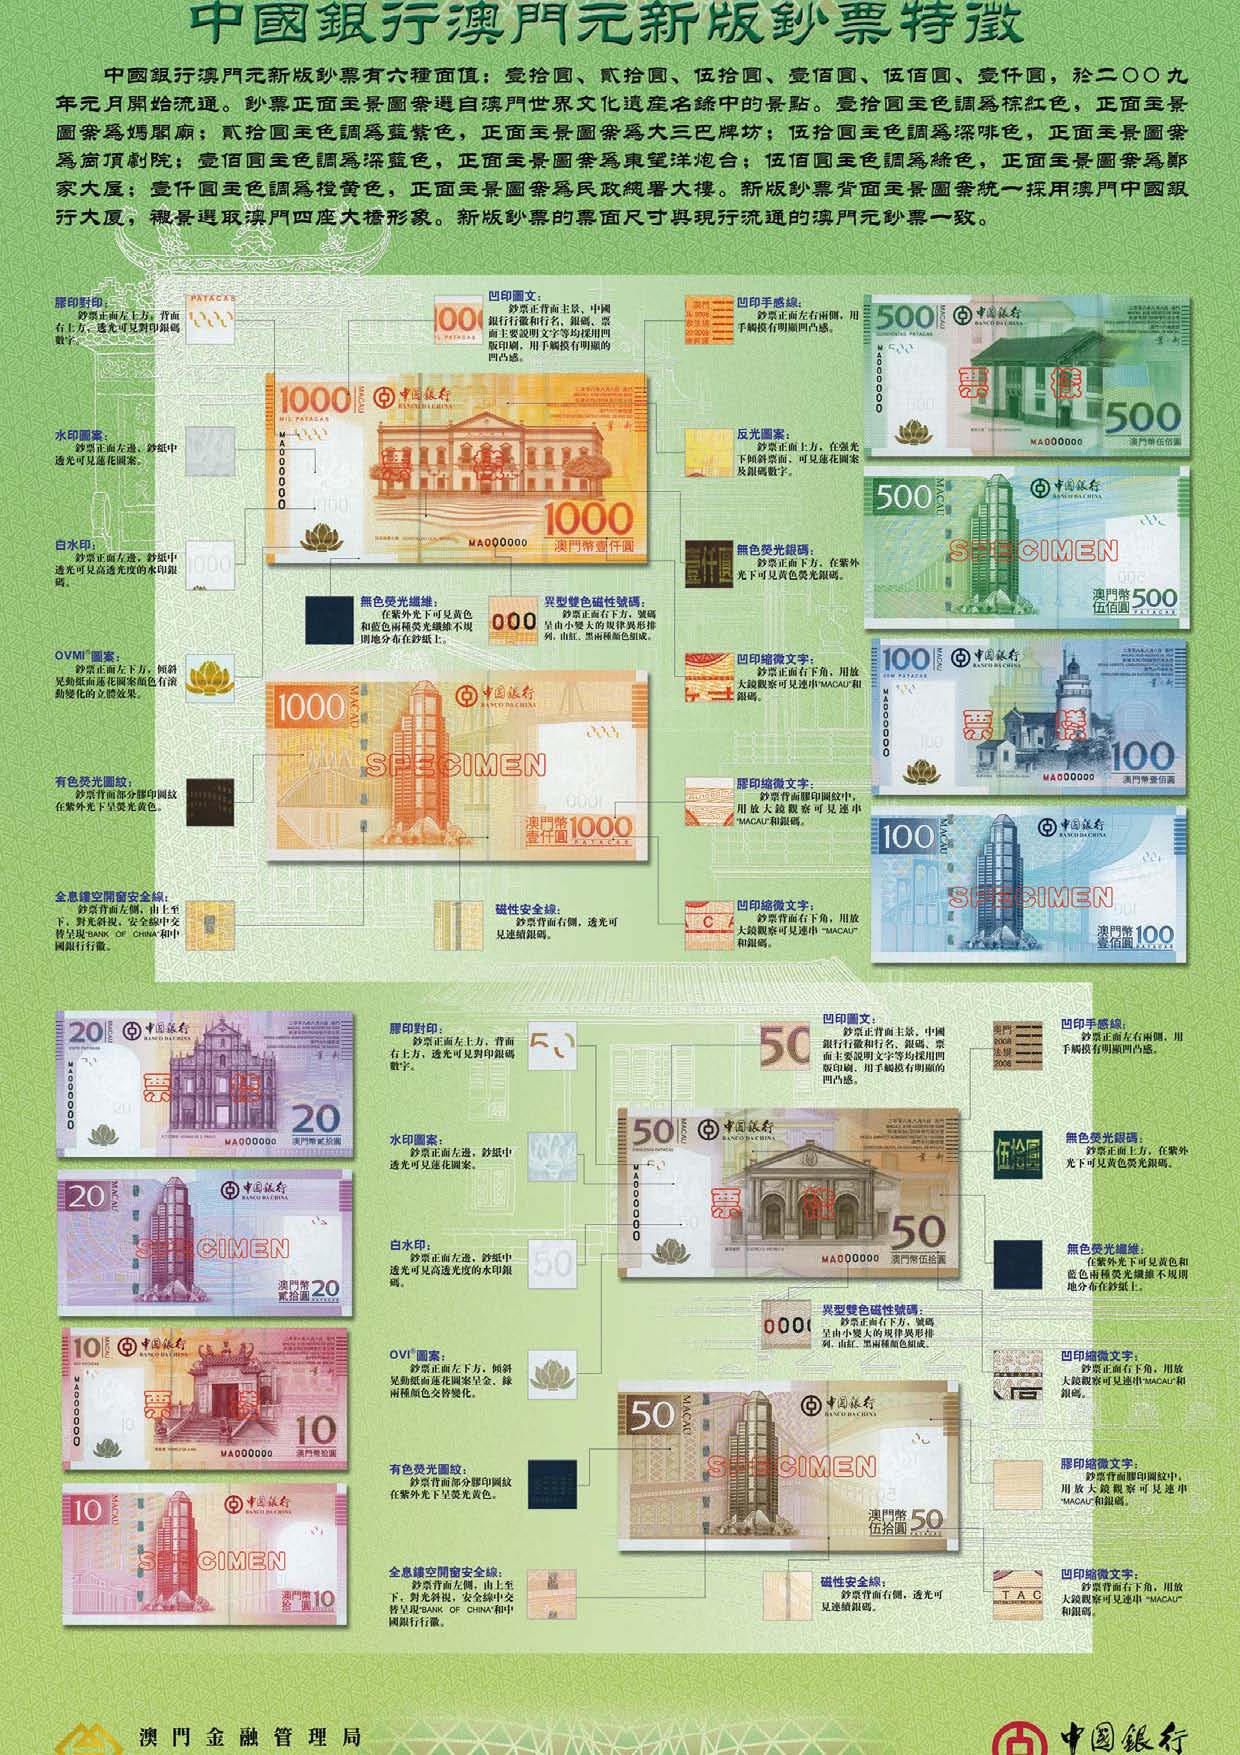 中國銀行澳門分行發行的澳門鈔